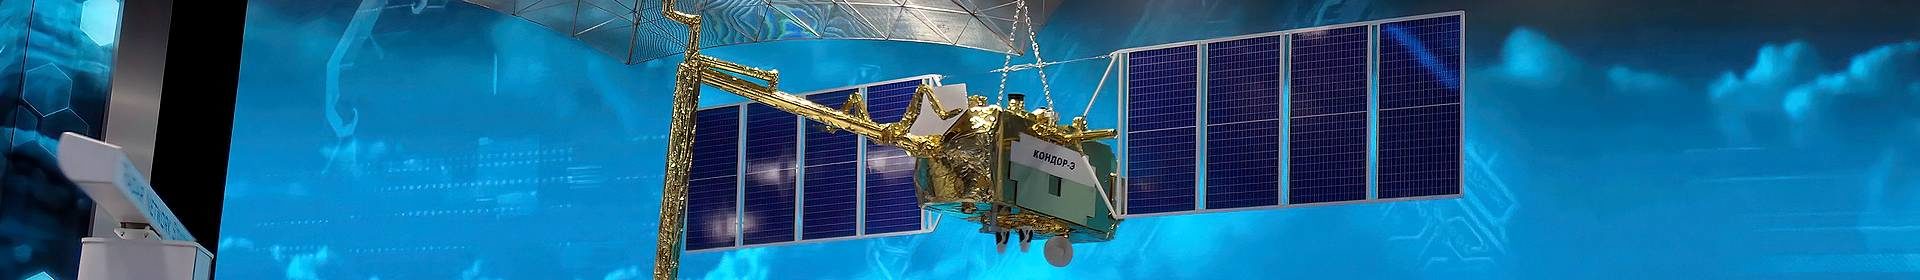 Digital satellite ready for orbit